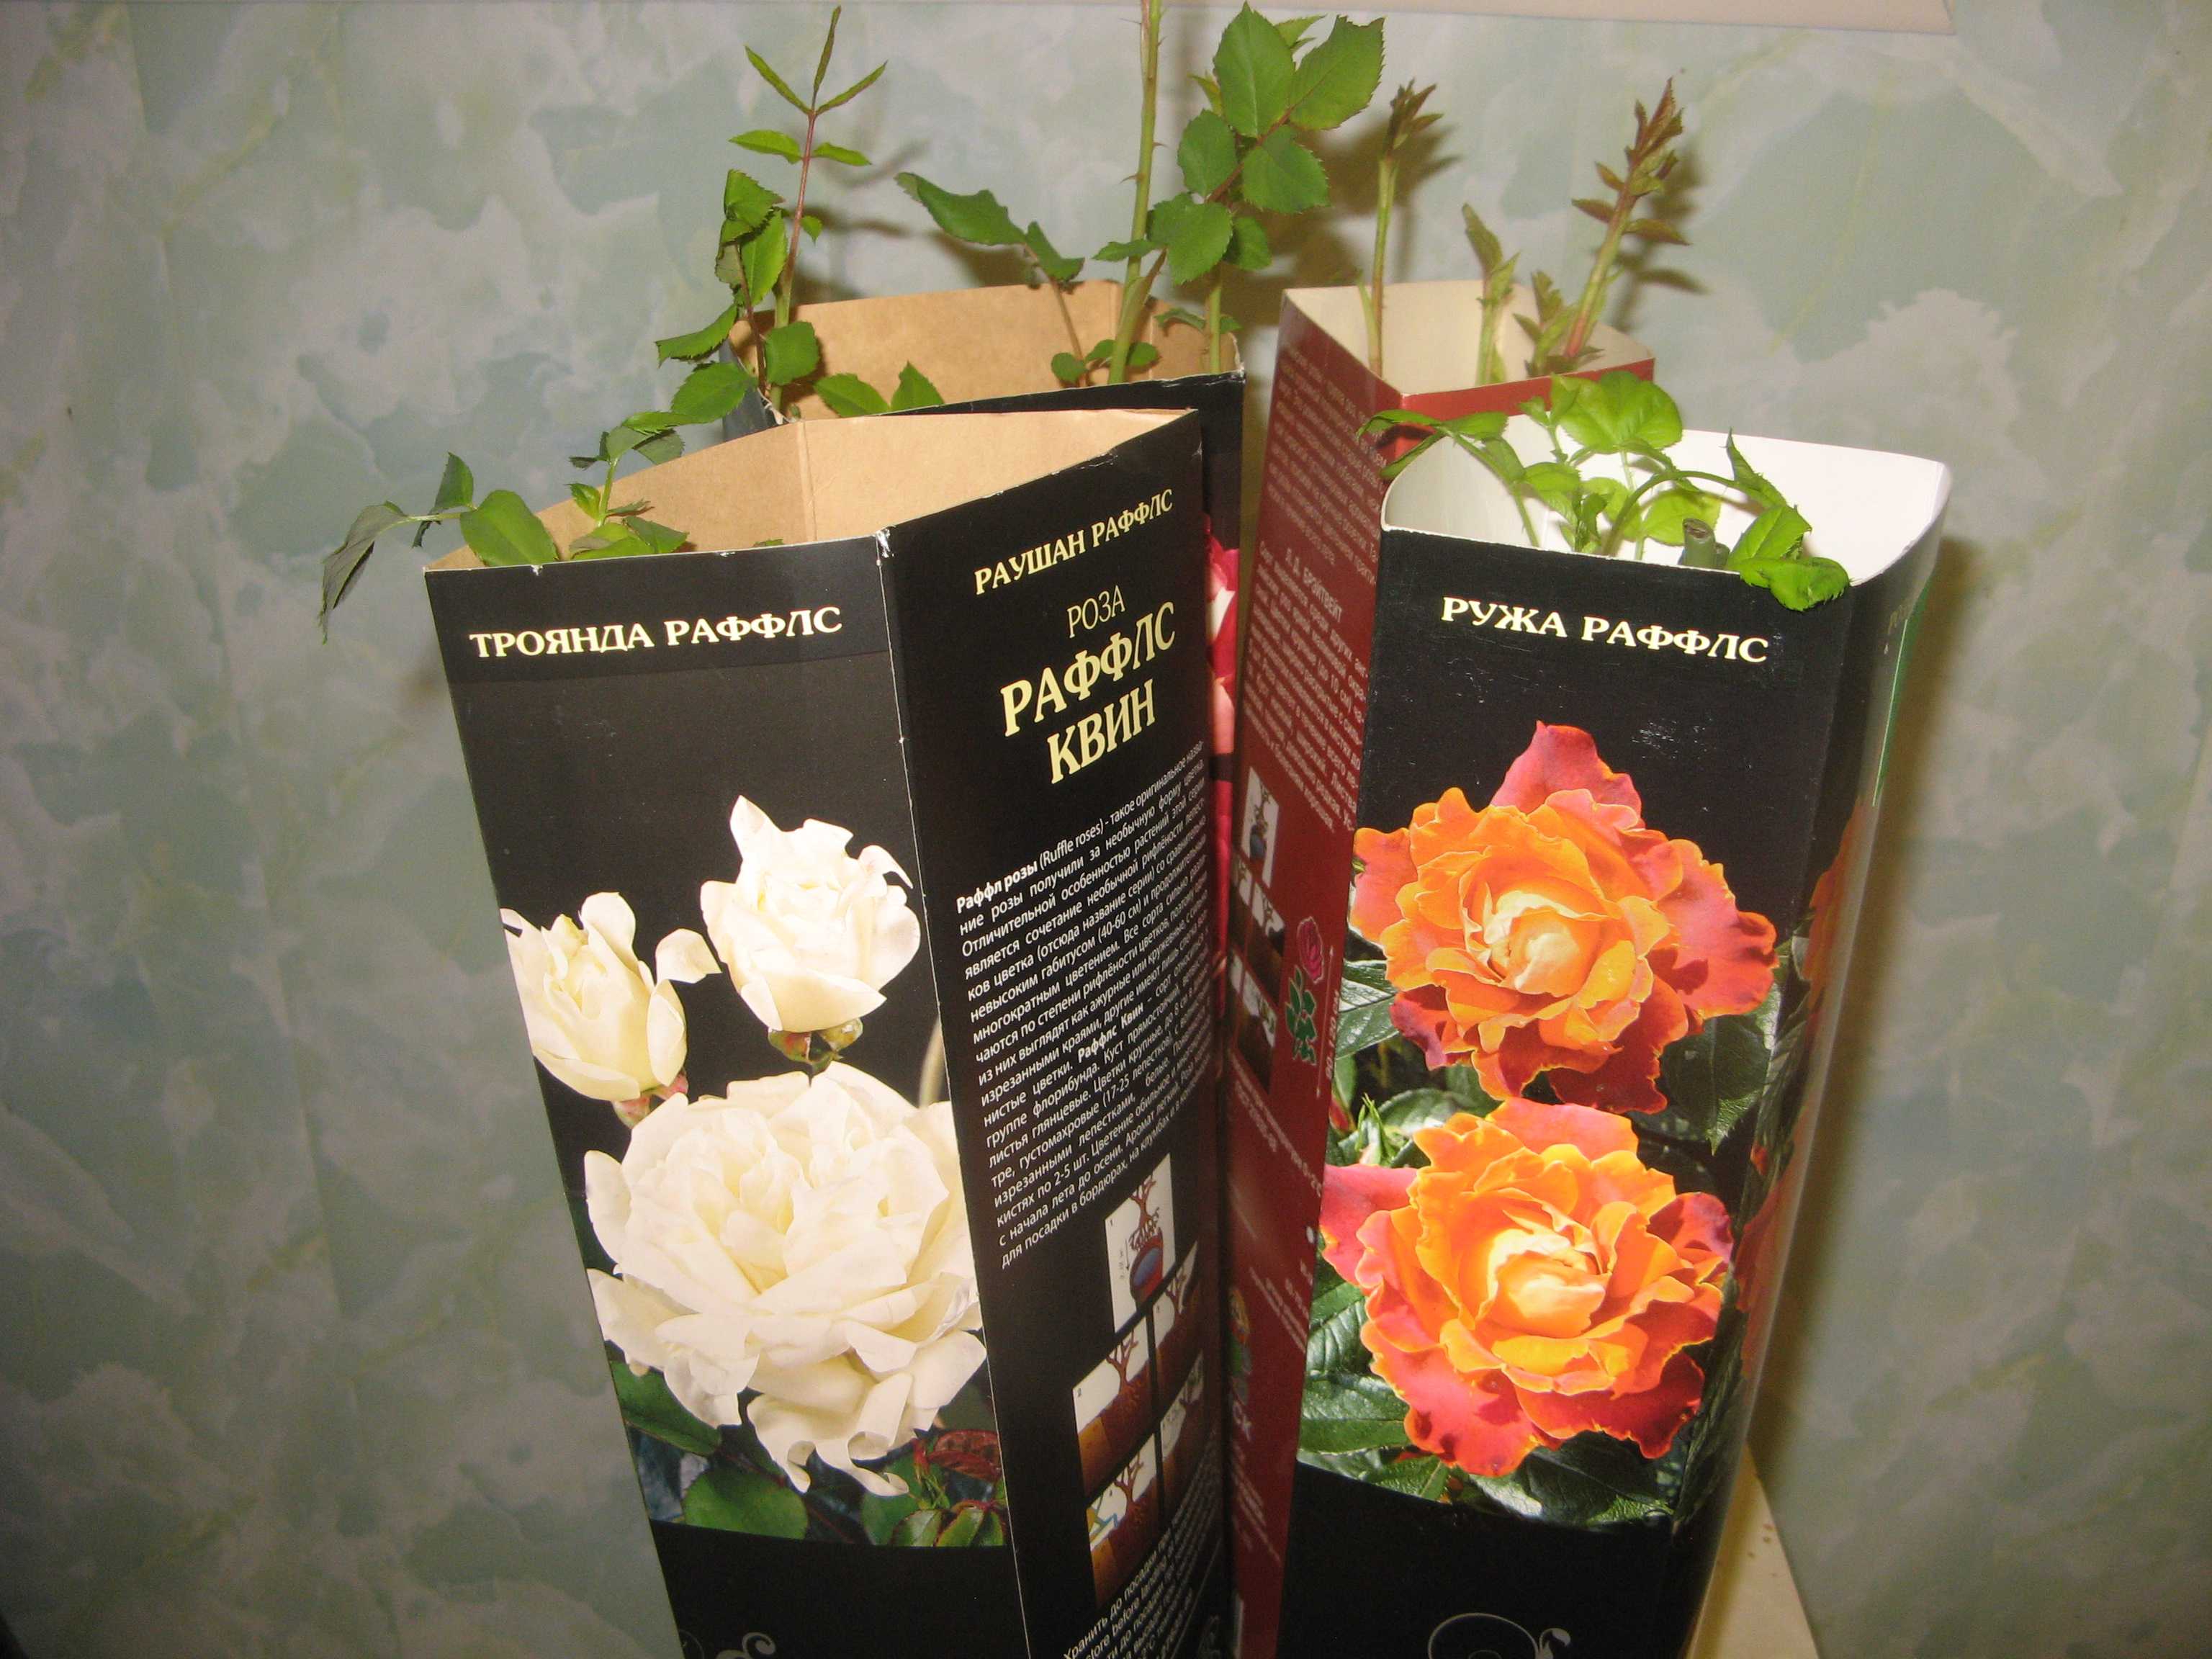 Саженцы роз после покупки. Саженцы роз в коробке. Упаковка для саженцев роз. Саженцы роз в упаковке. Розы саженцы из коробки.